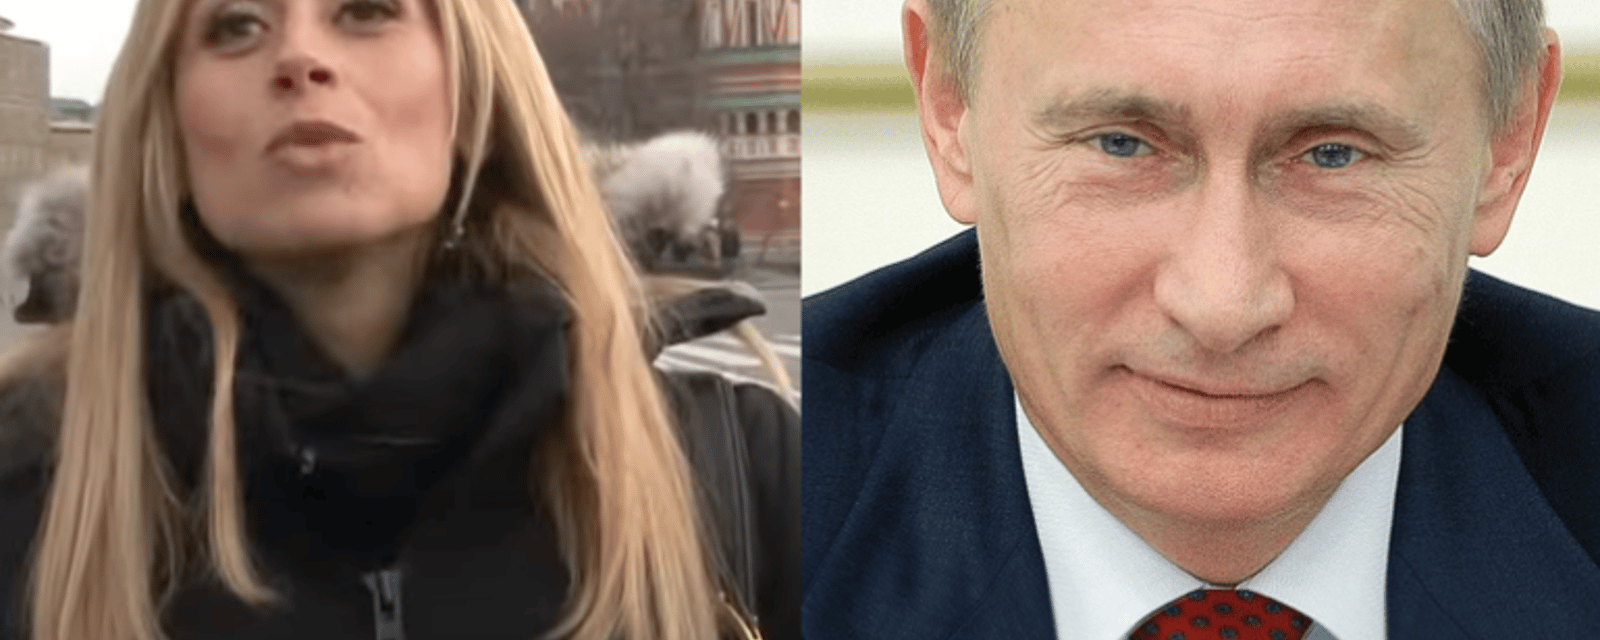 Lara Fabian fait une importante mise au point concernant une folle rumeur la liant à Poutine